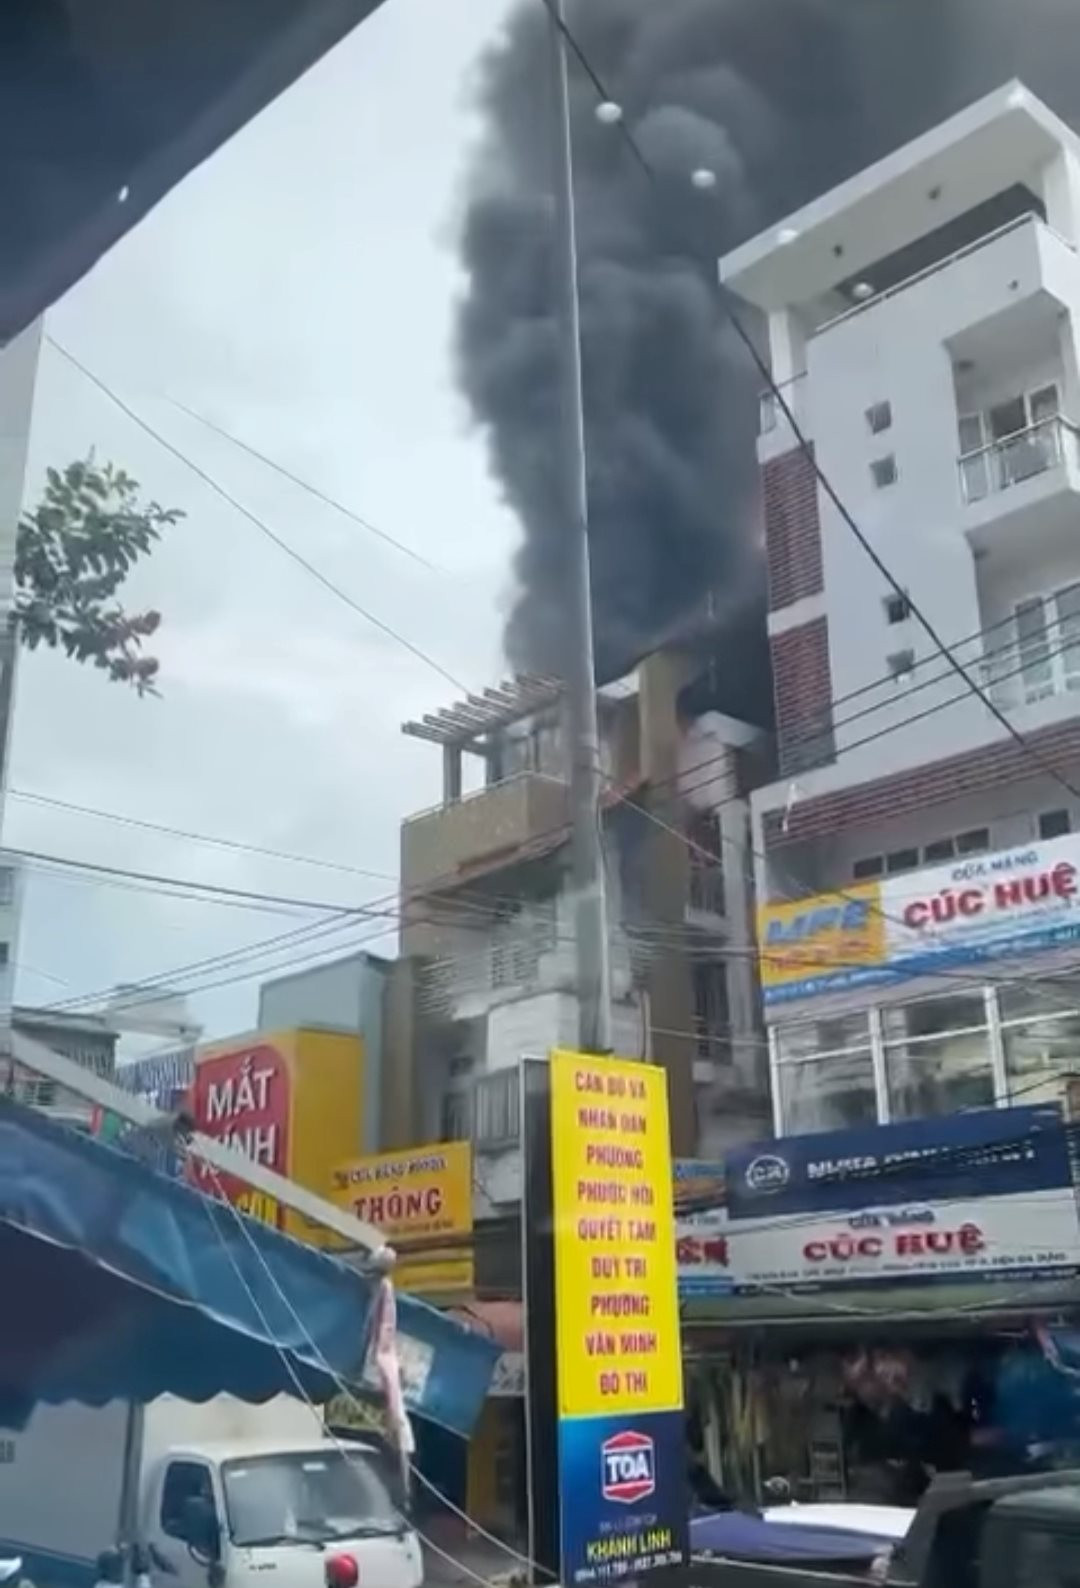 Cháy lớn tại cửa hàng phụ tùng xe máy ở Bình Thuận, lửa bốc lên ngùn ngụt